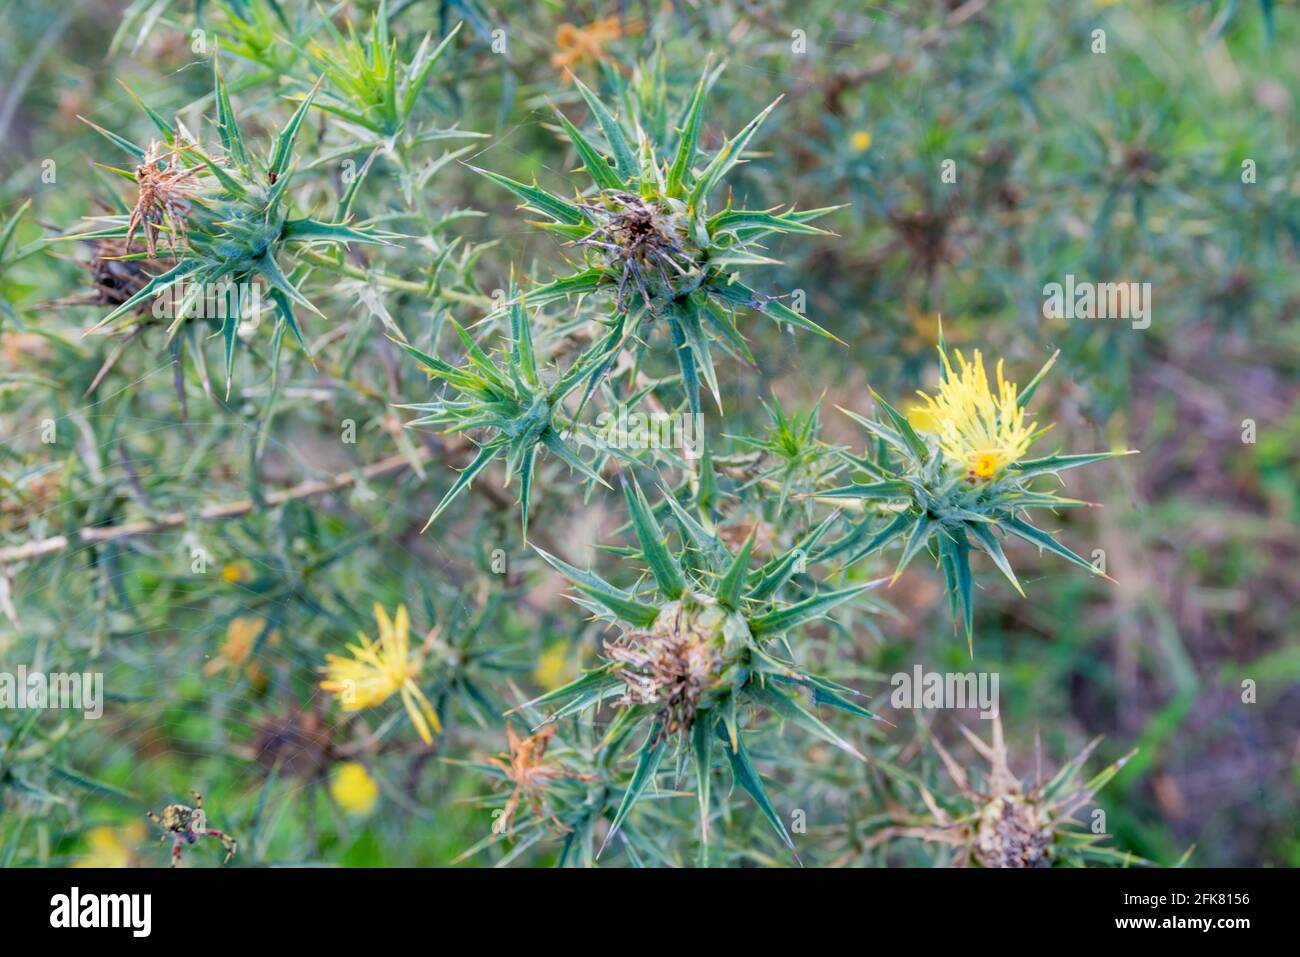 Le chardon de St. Barnaby (Centaurea solstitialis) est une mauvaise herbe nocive en Nouvelle-Galles du Sud et une plante annuelle estivale qui peut concurrencer les cultures et les pâturages Banque D'Images